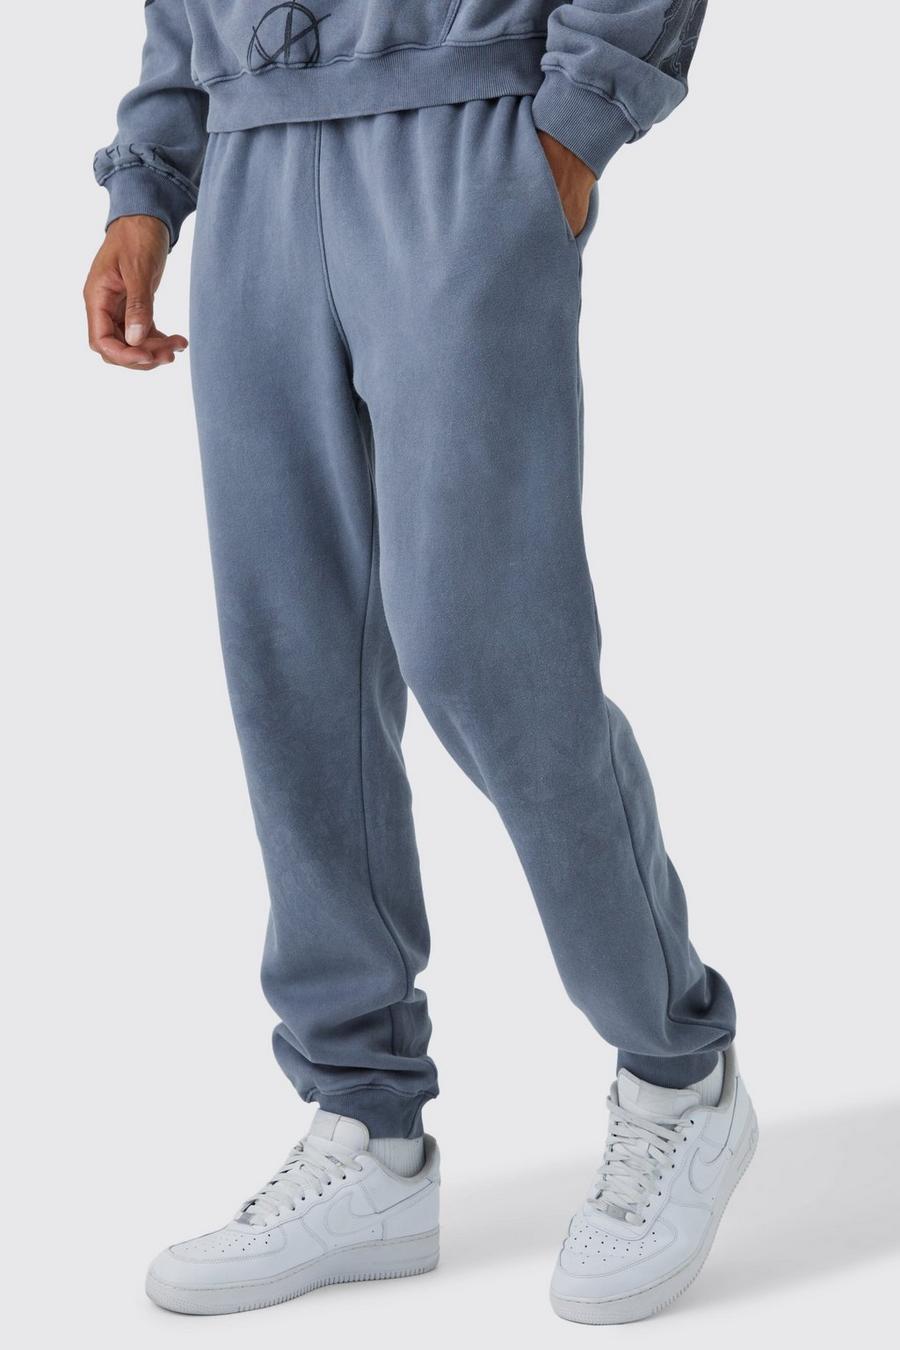 Pantaloni tuta Tall in slavato acido, Charcoal grigio